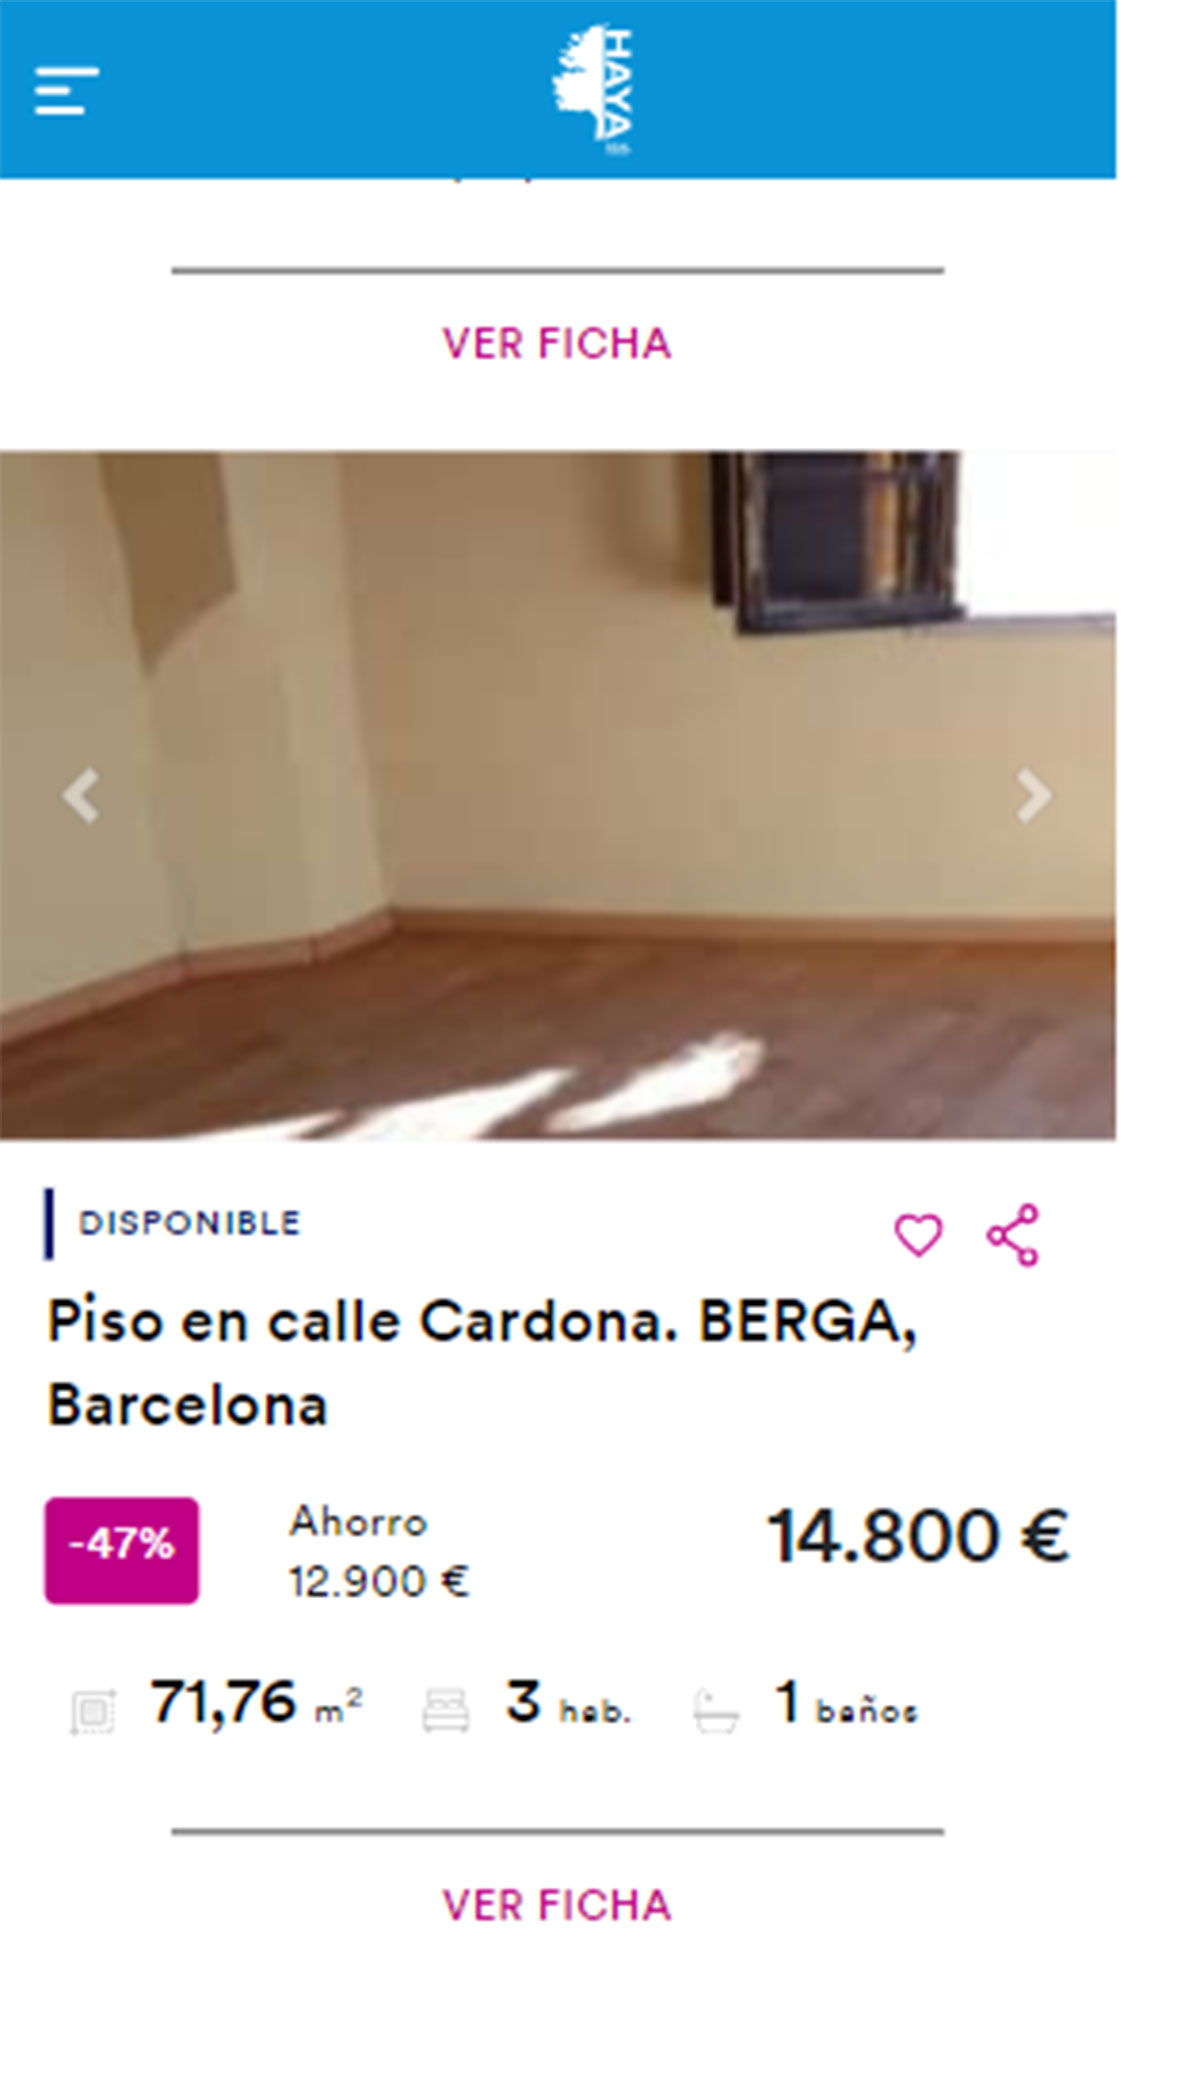 Piso en Barcelona por 14.800 euros